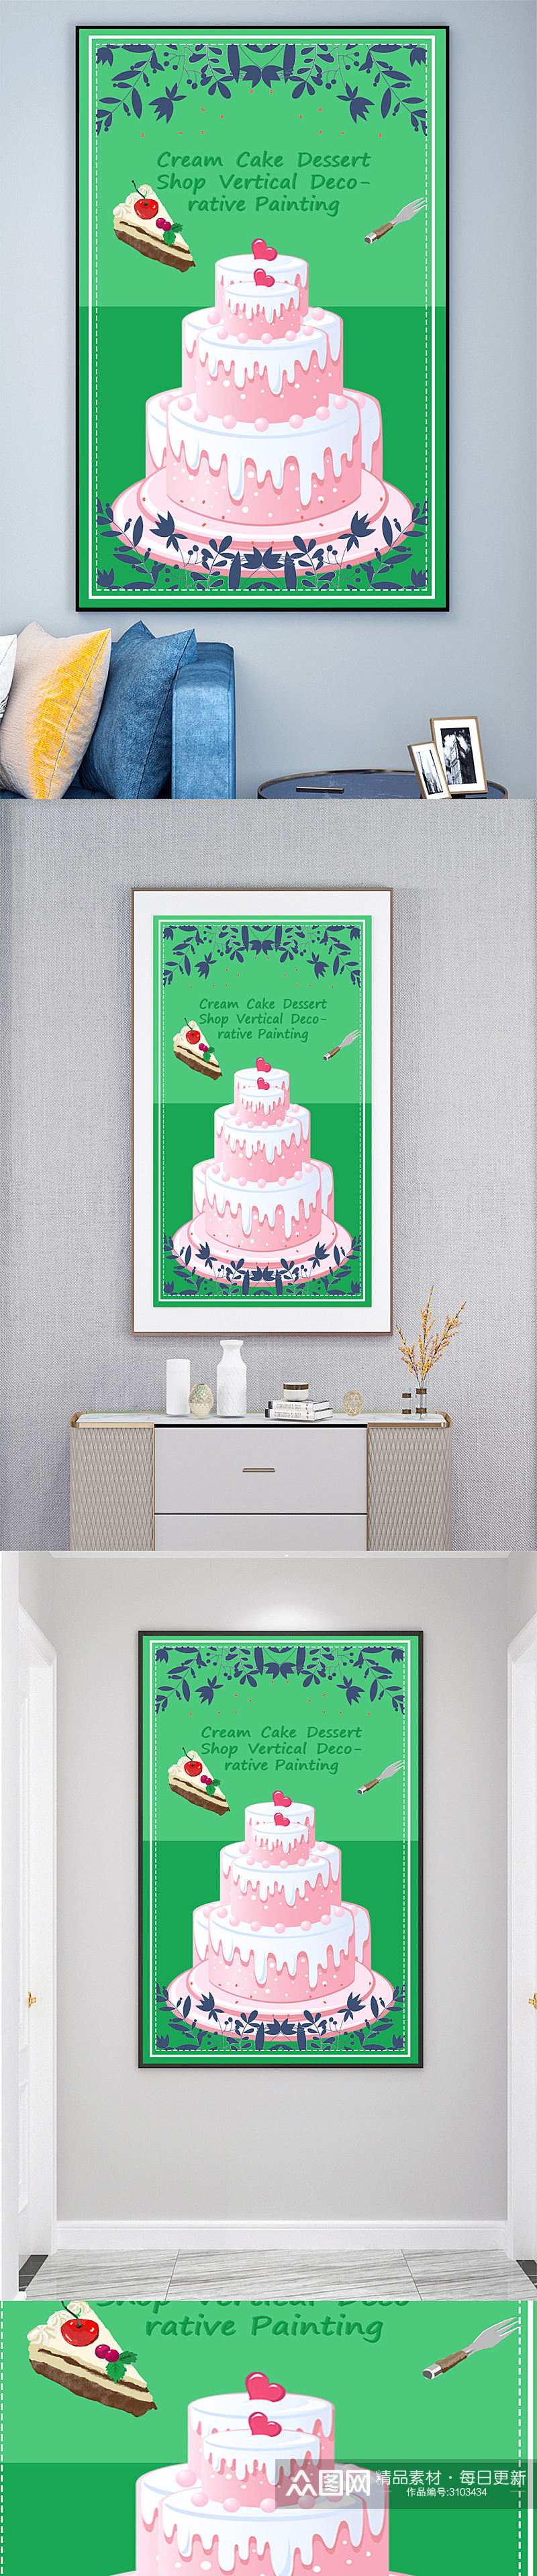 蛋糕店烘焙店蛋糕壁画装饰画素材